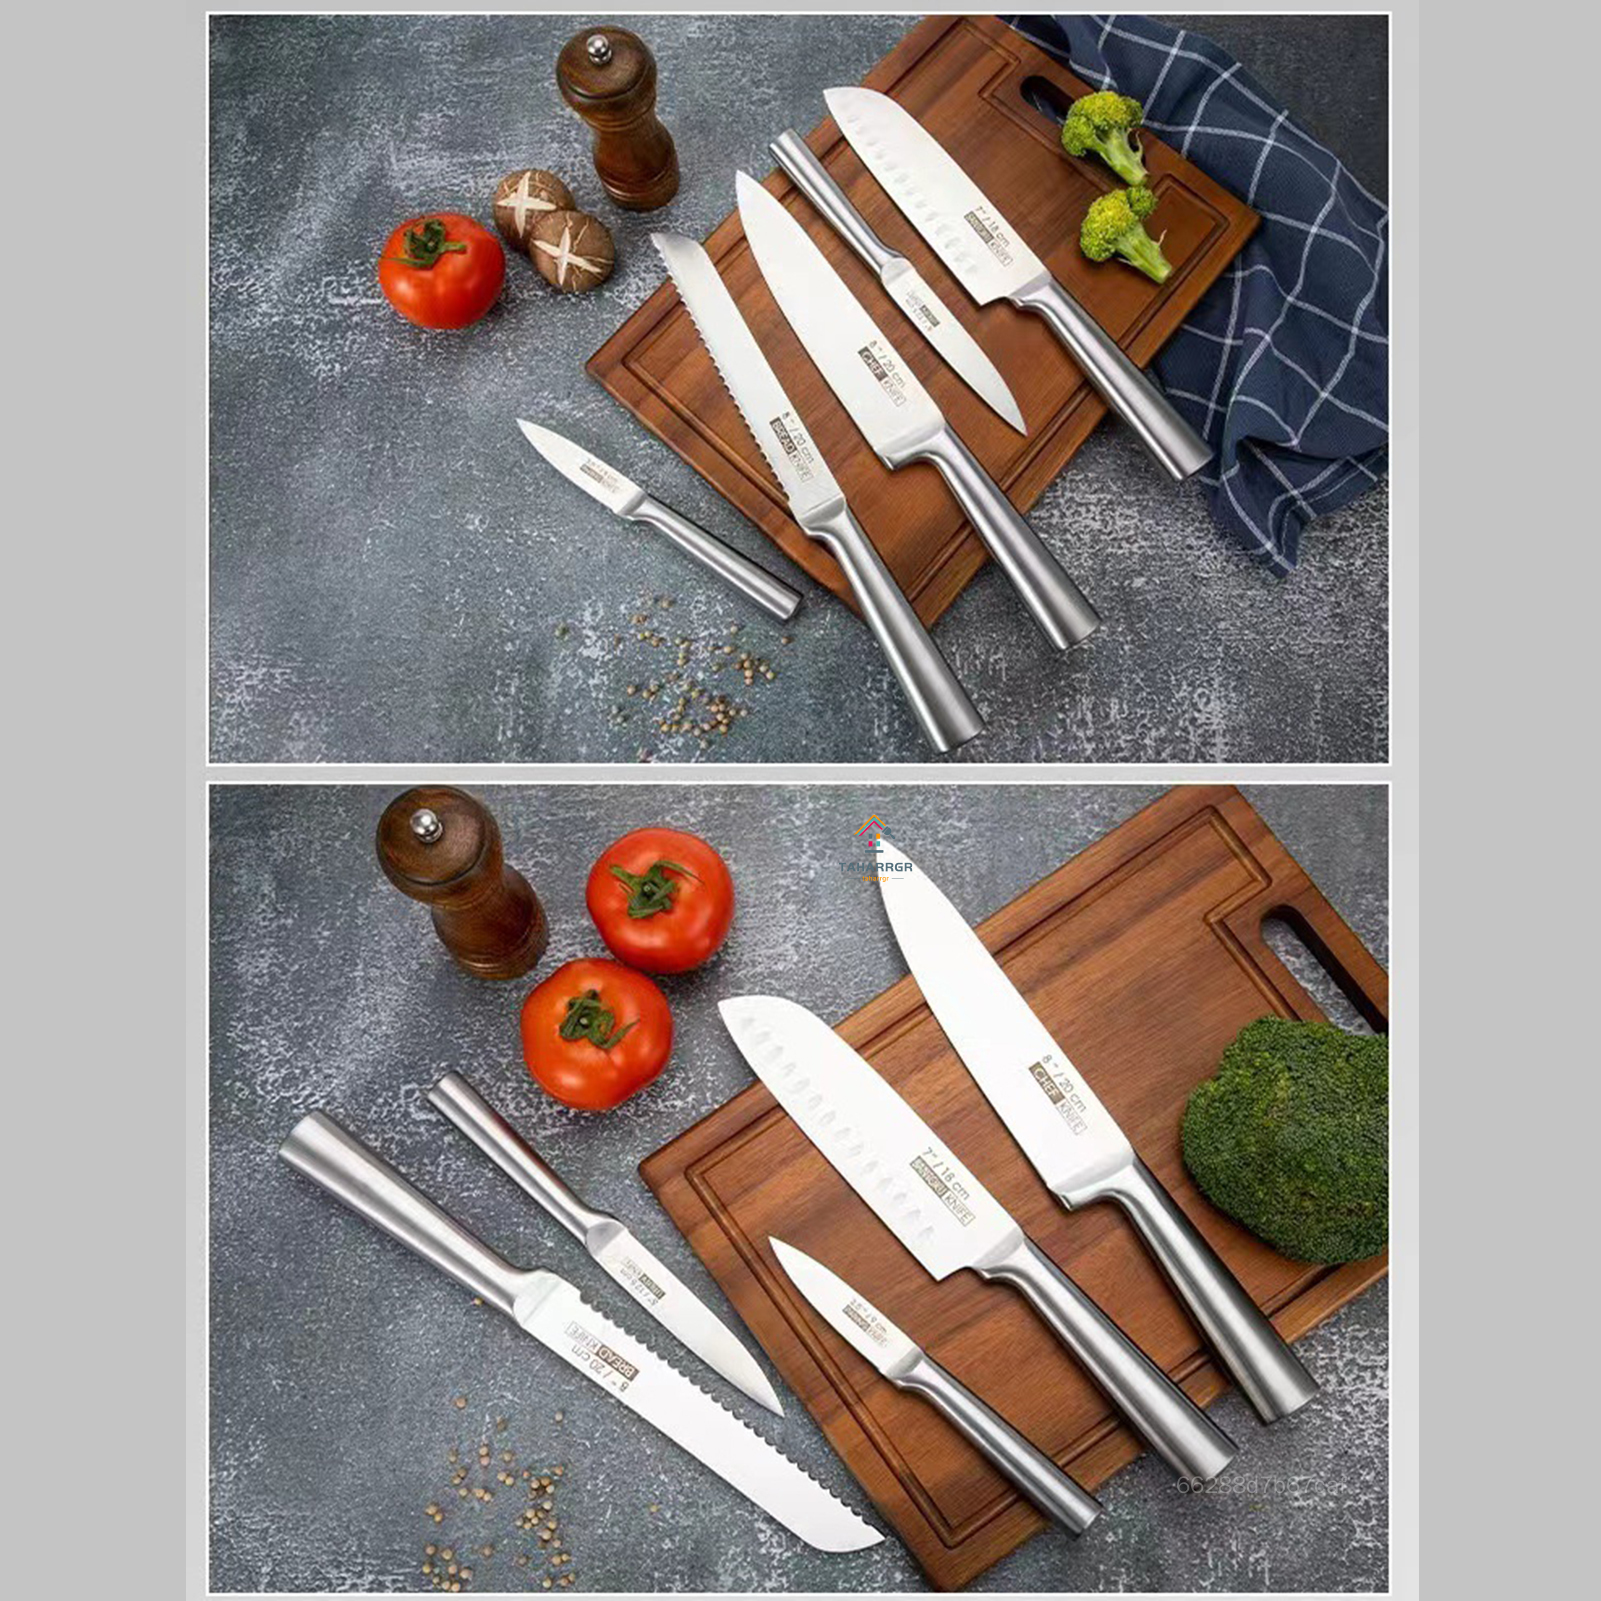 Taharrgr 5-Mảnh dao nhà bếp Bộ Sắc Nét Peeler Kéo dùng trong nhà bếp Dao Cho Nấu Ăn sử dụng thường nhật TAGR-MY